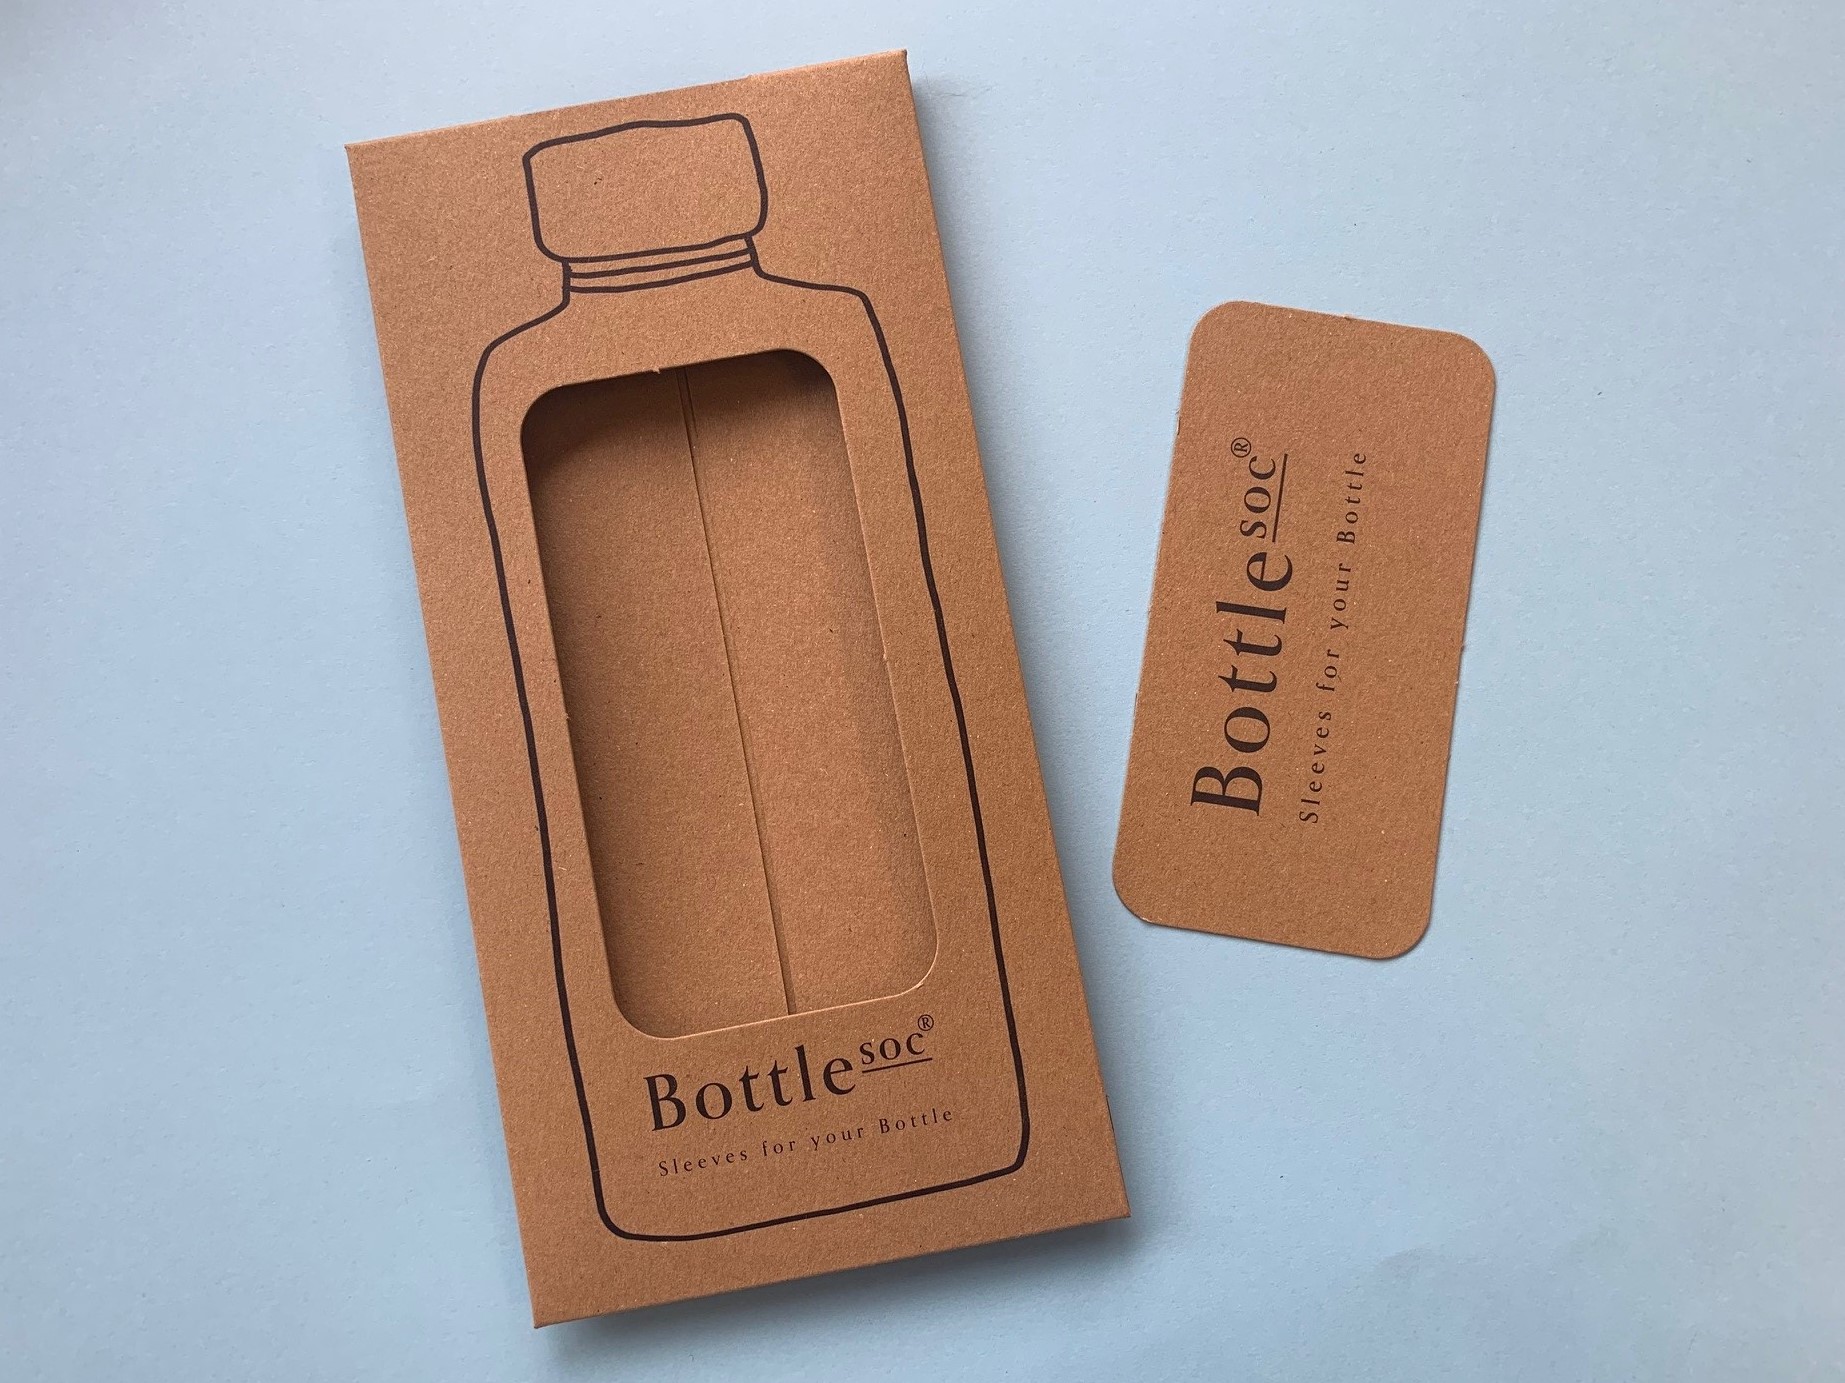 Bottlesoc's sustainable printed packaging